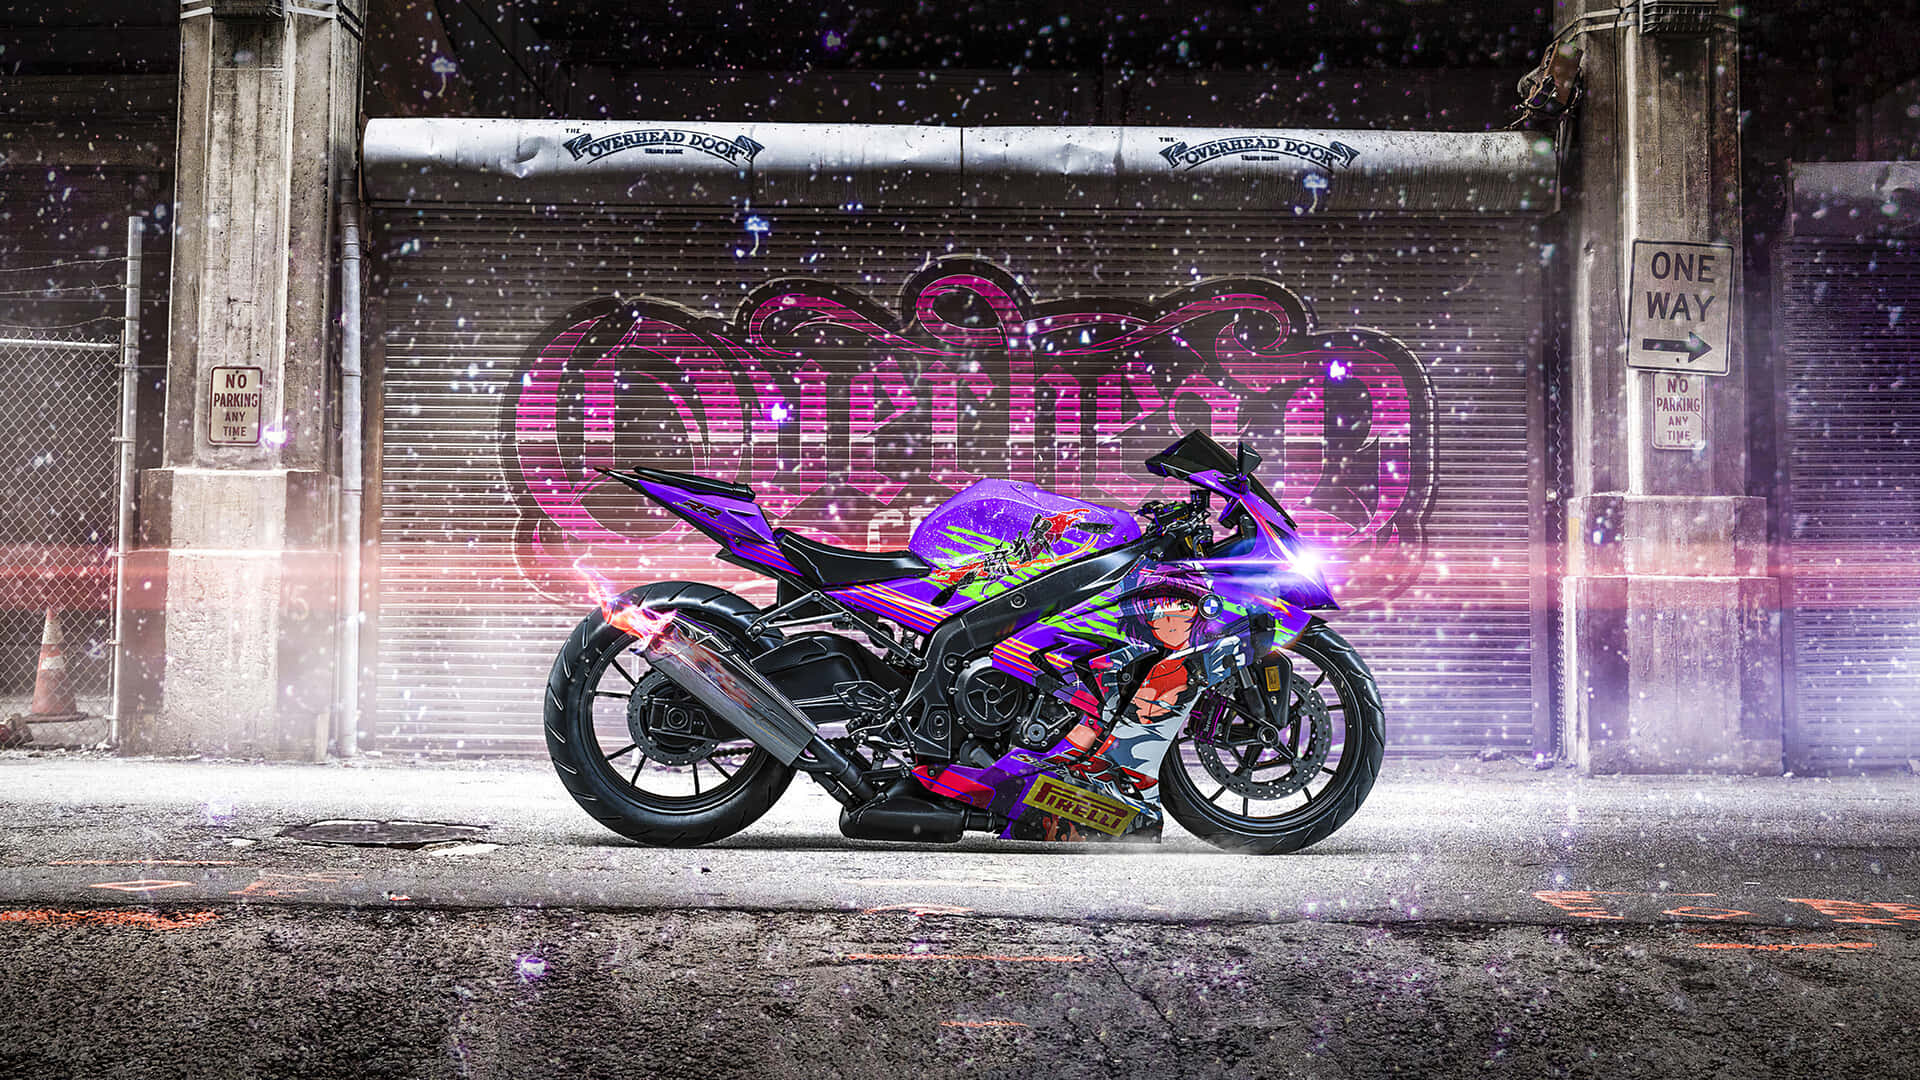 2560x1440 Motorcykel Wallpaper